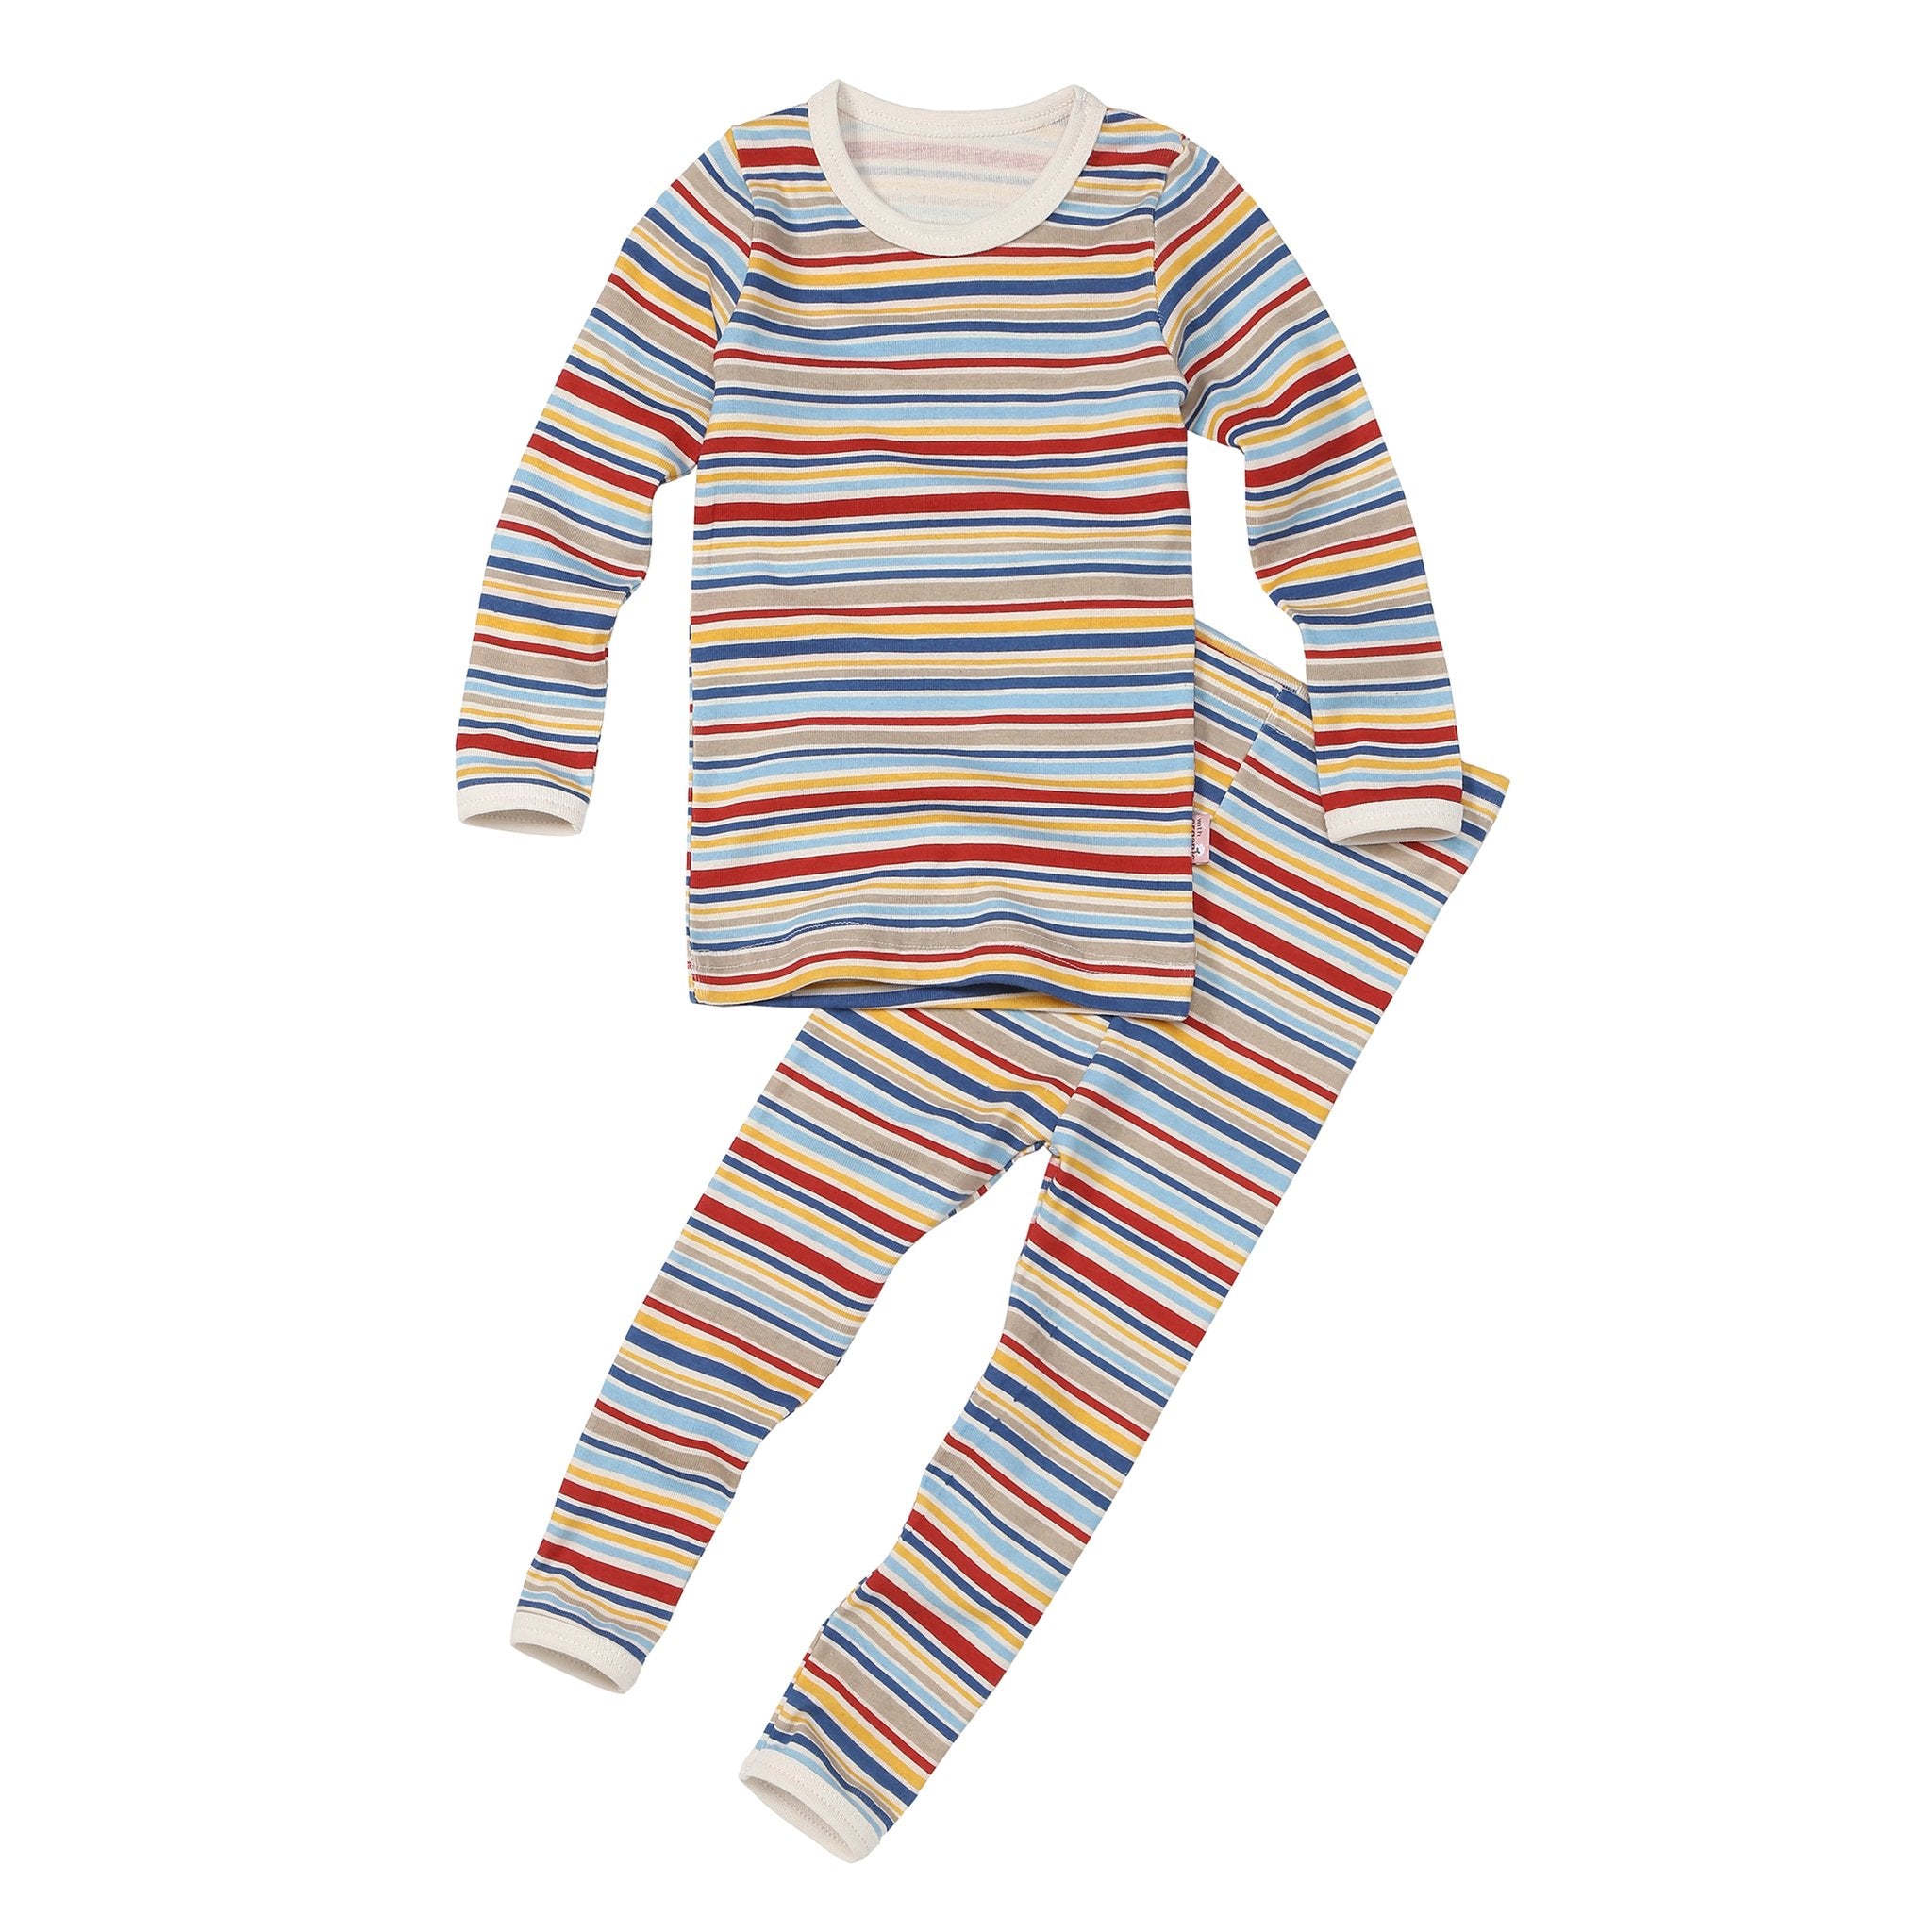 Kids Pajama and Matching Doll Set - Train Stripe